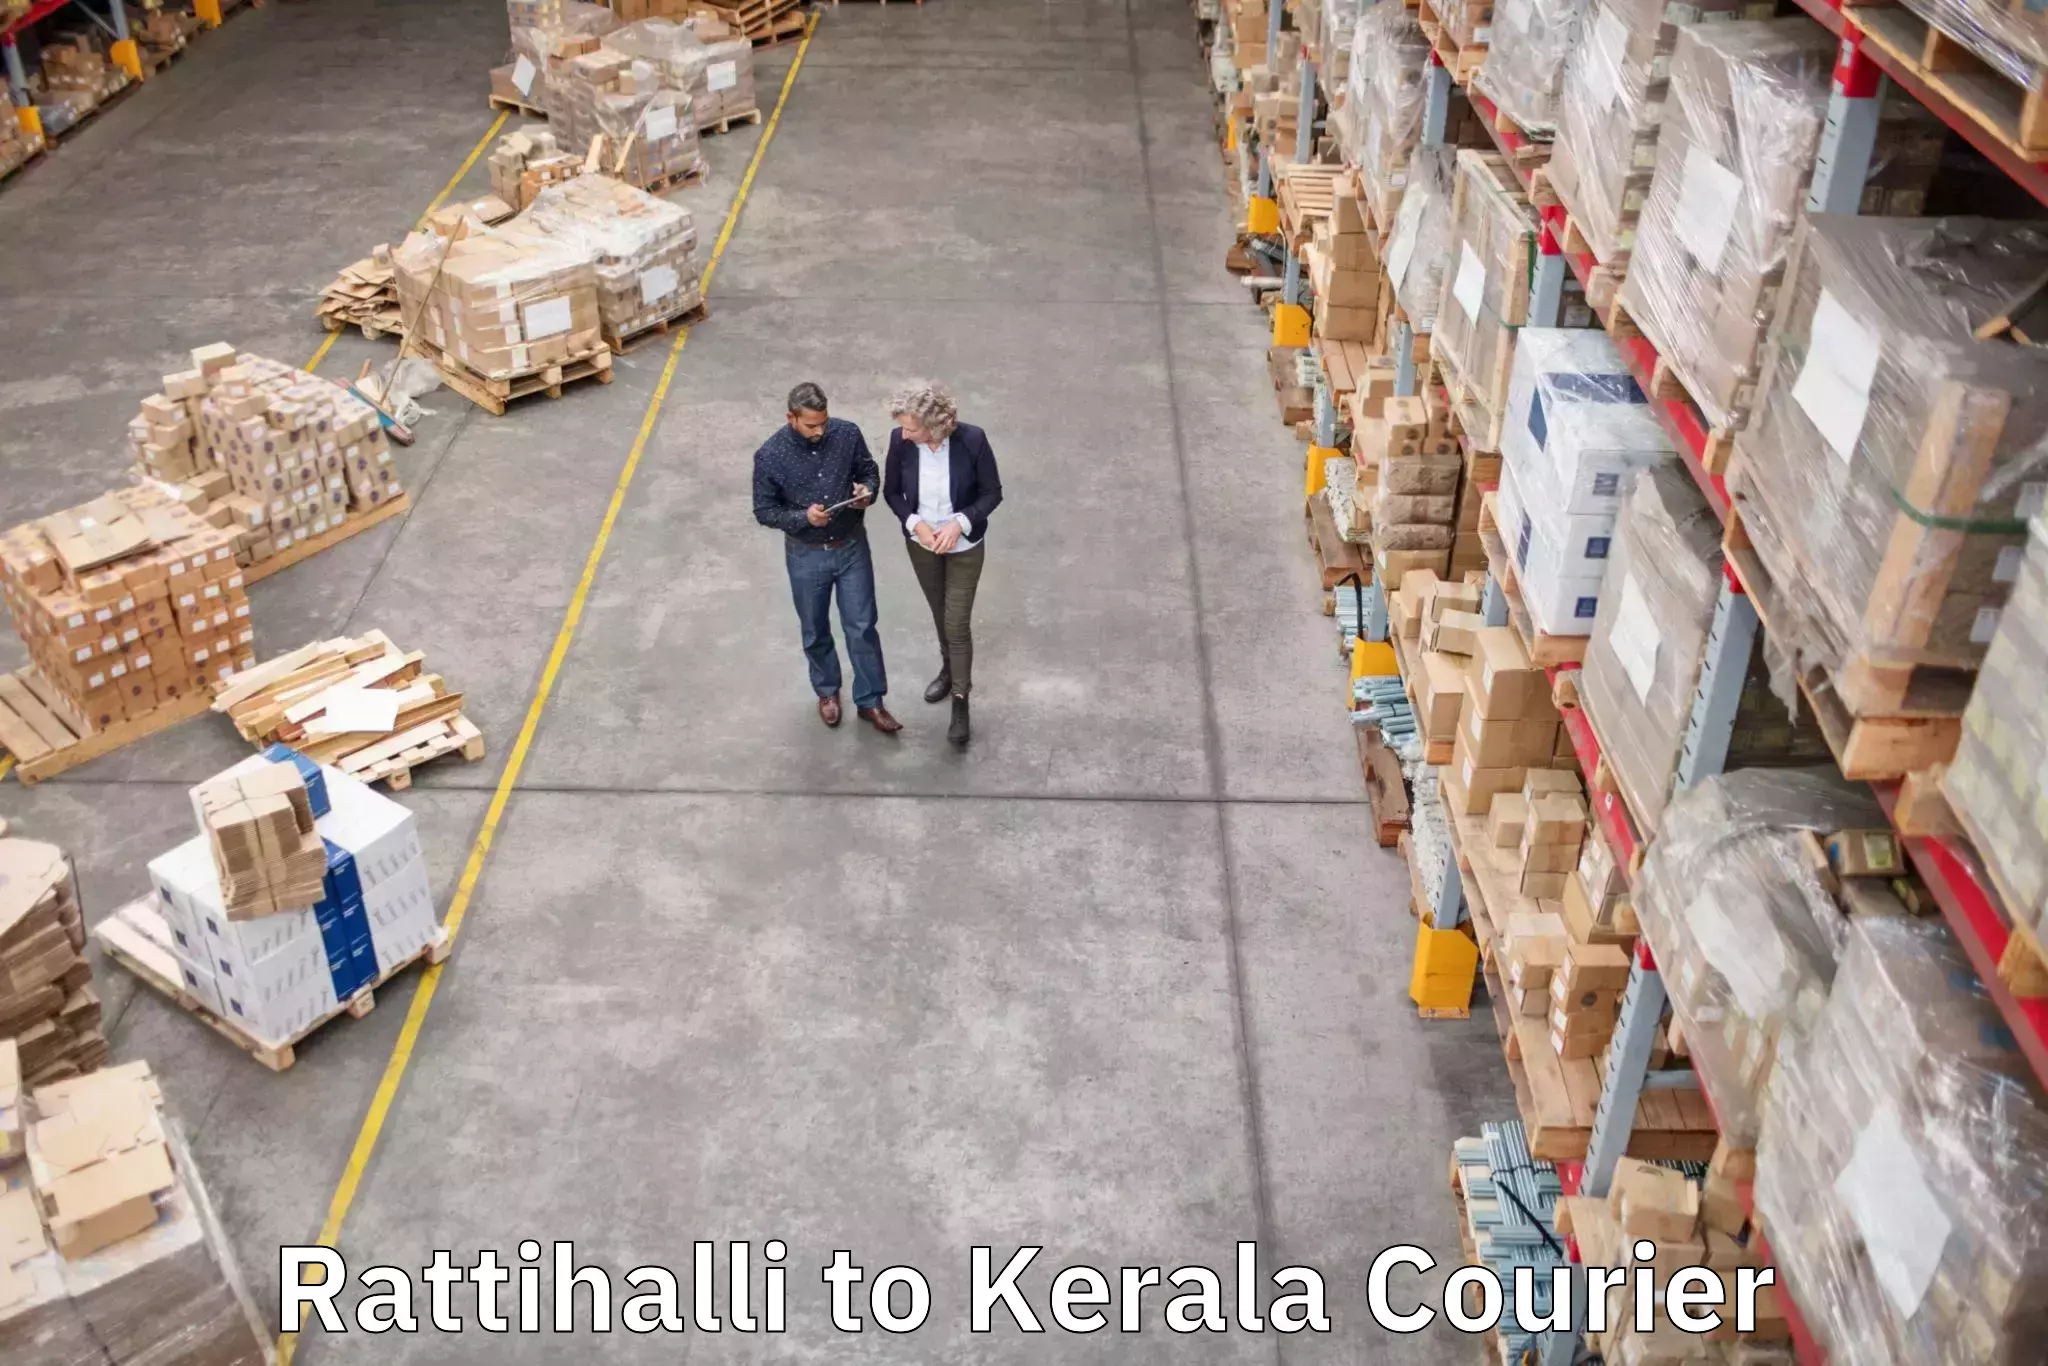 Luggage transport consultancy Rattihalli to Kothamangalam